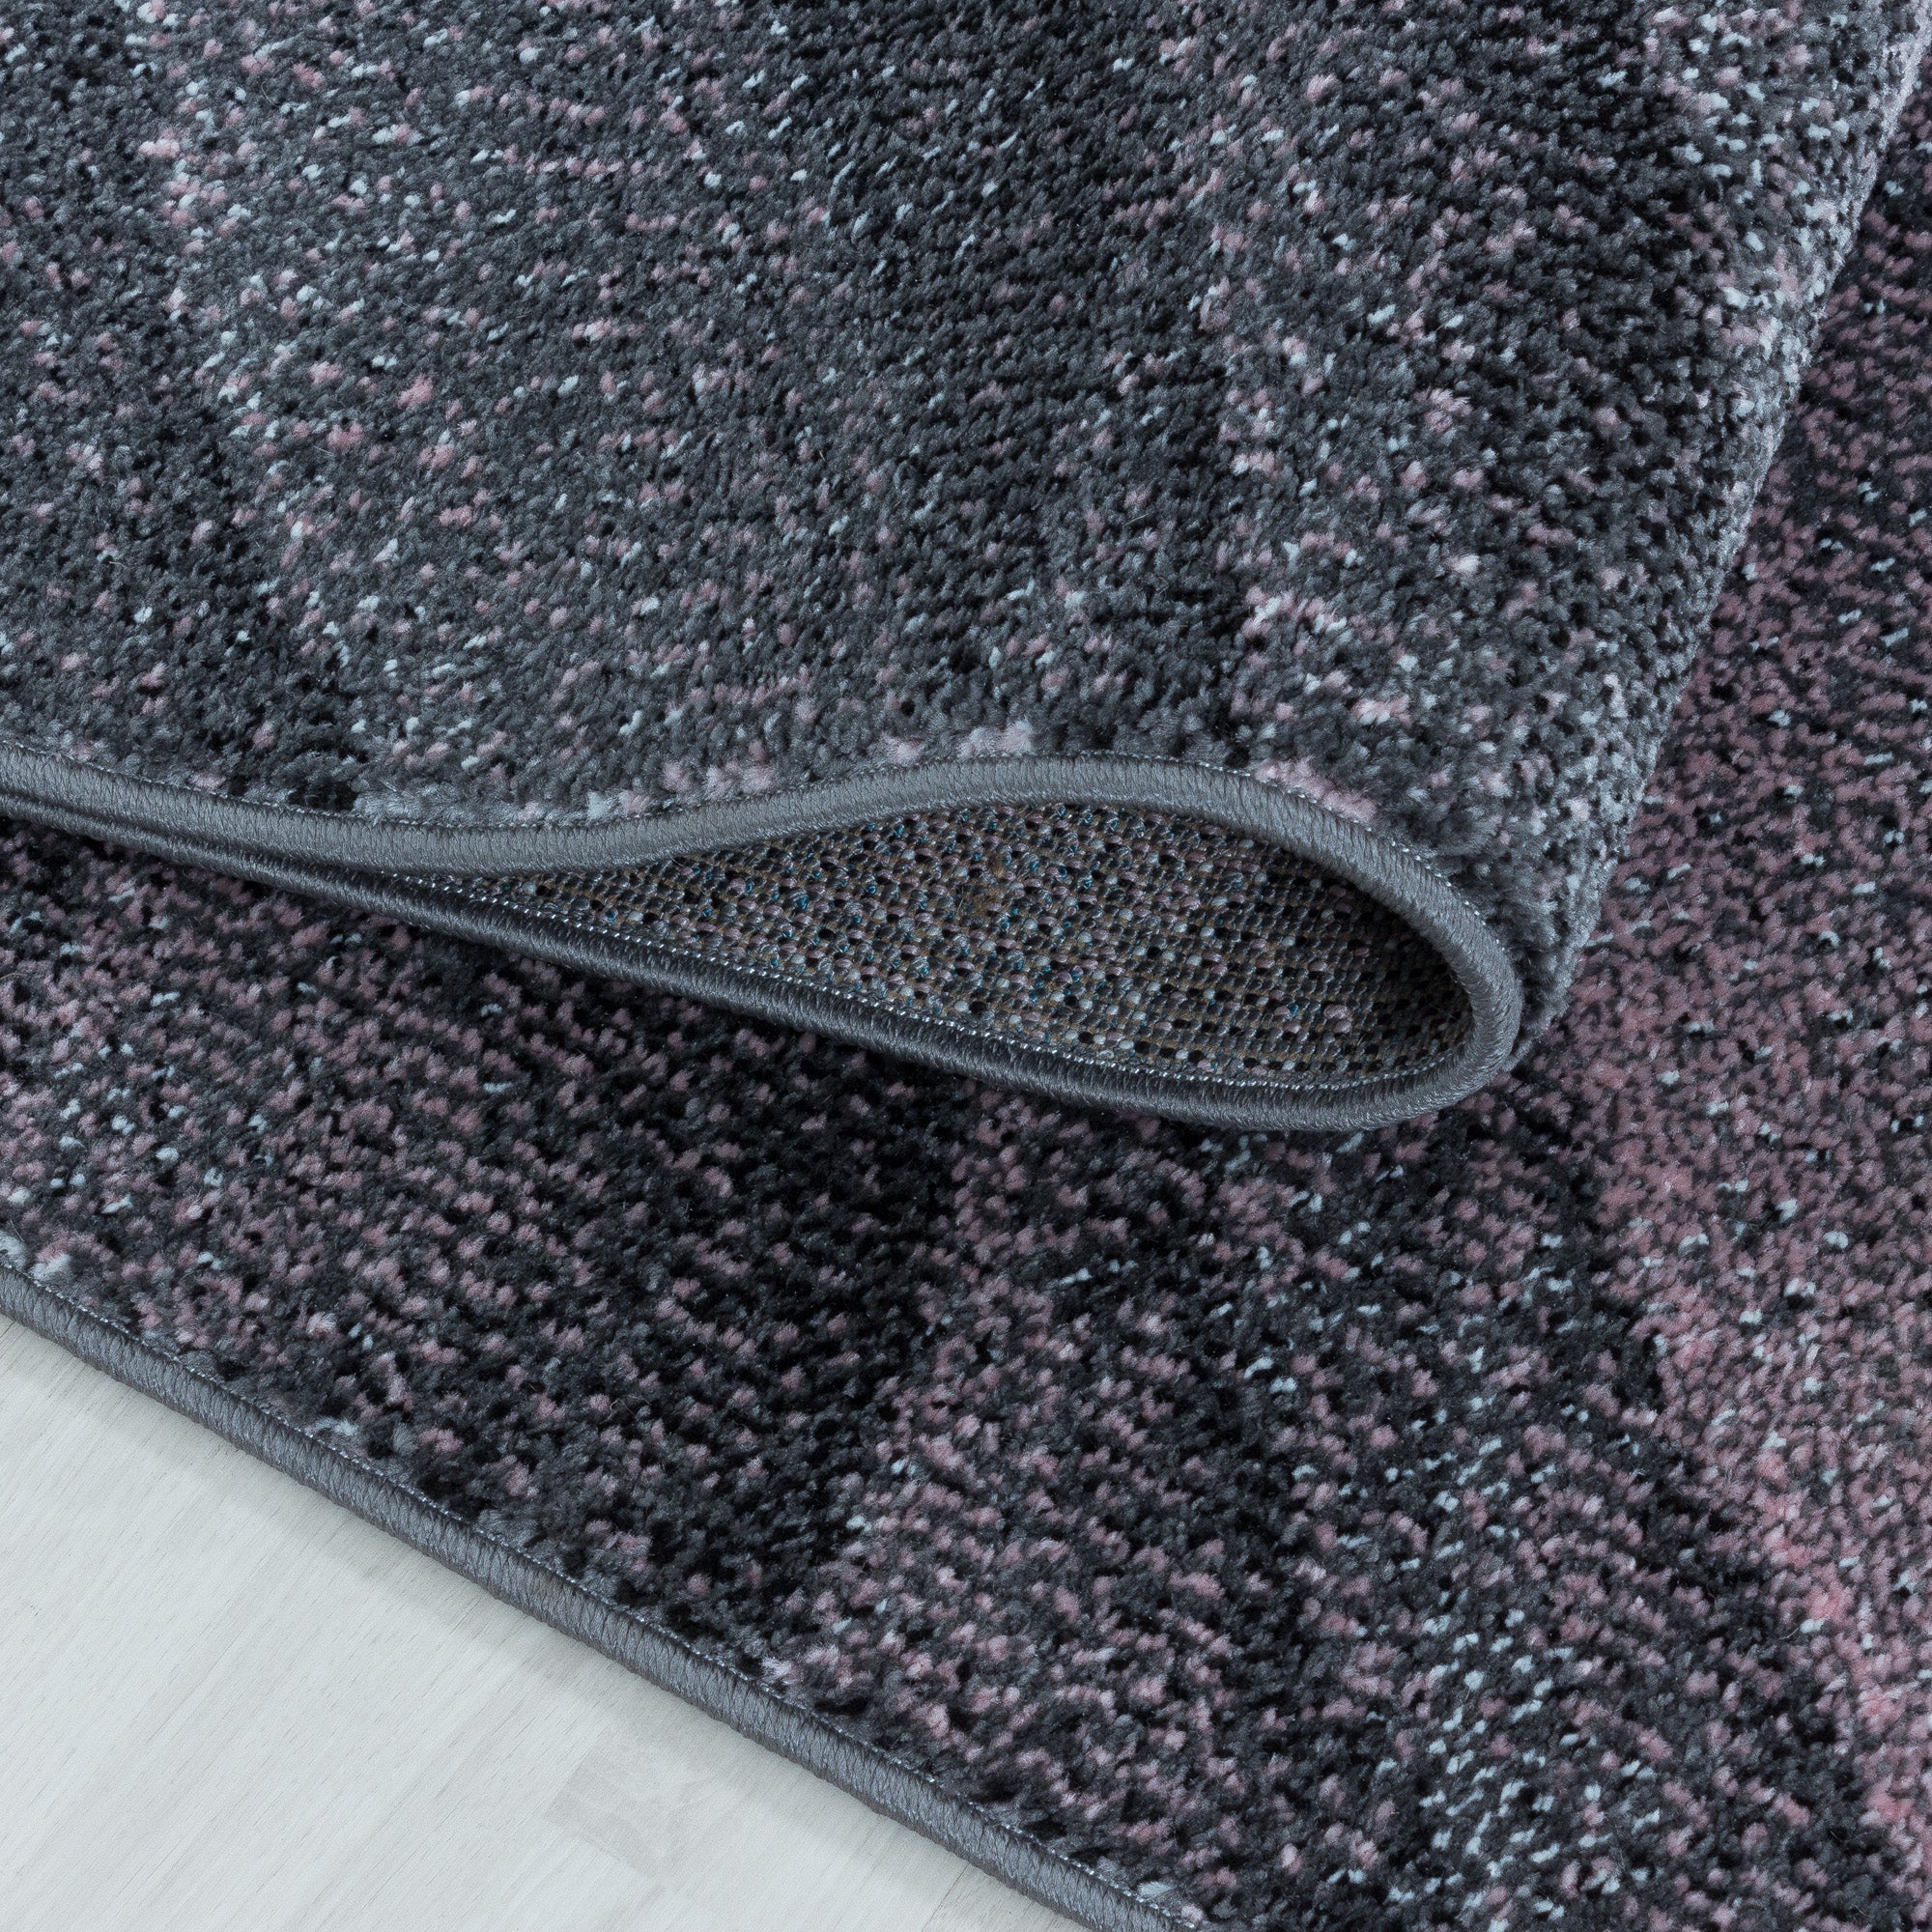 Kurzflor Teppich Rosa Grau Muster Modern Design Wellen Linien Wohnteppich Weich